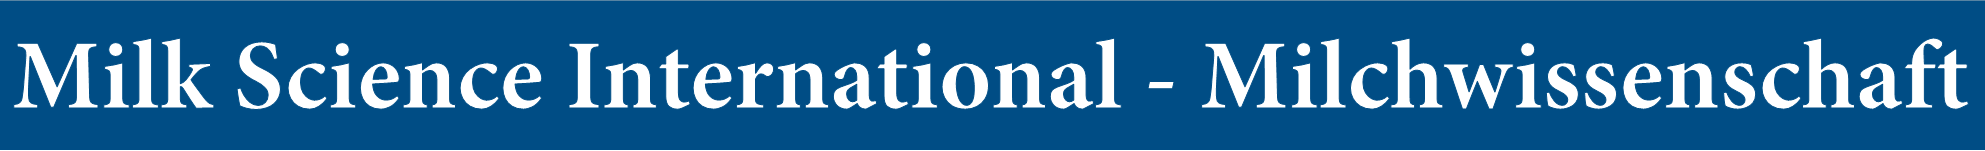 Logo milk science international